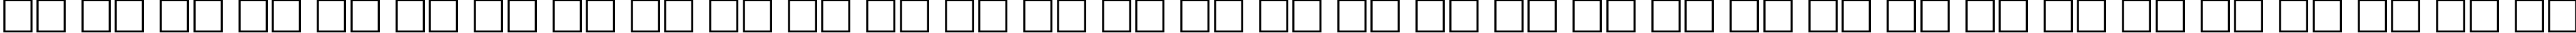 Пример написания русского алфавита шрифтом ATROX normal